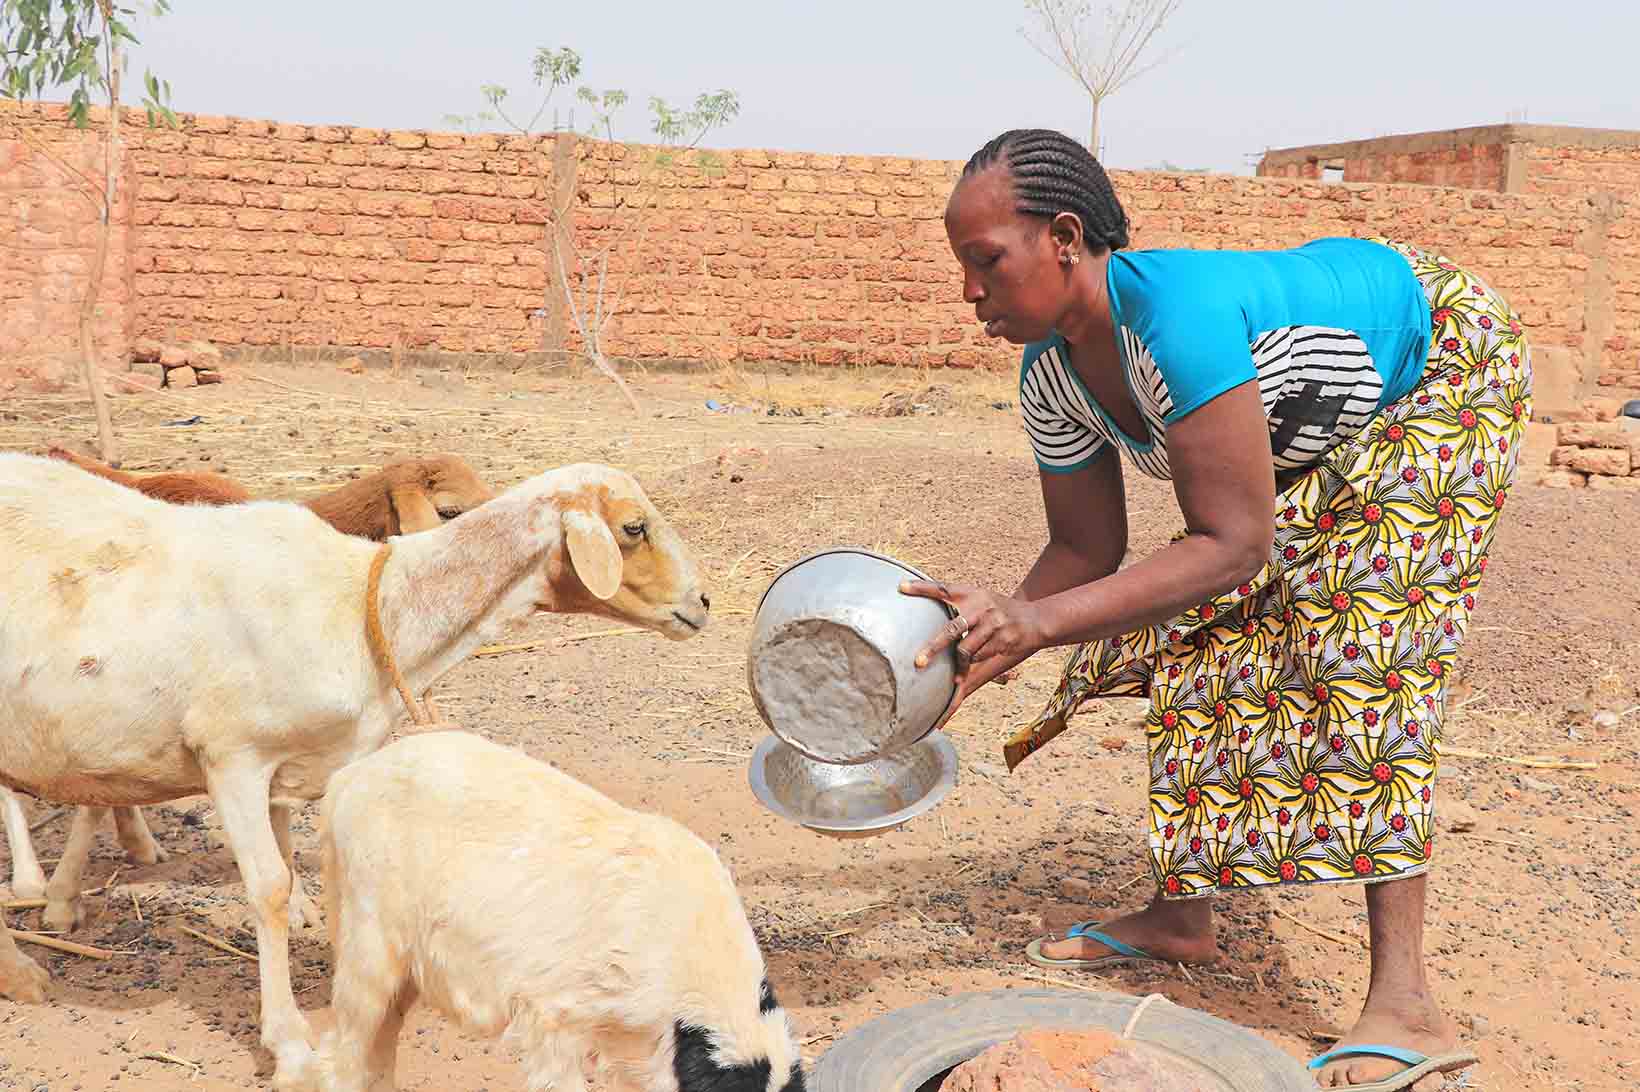 Eine Frau aus Burkina Faso, die vor kurzem eine Graue-Star-Operation hatte, füttert Ziegen.